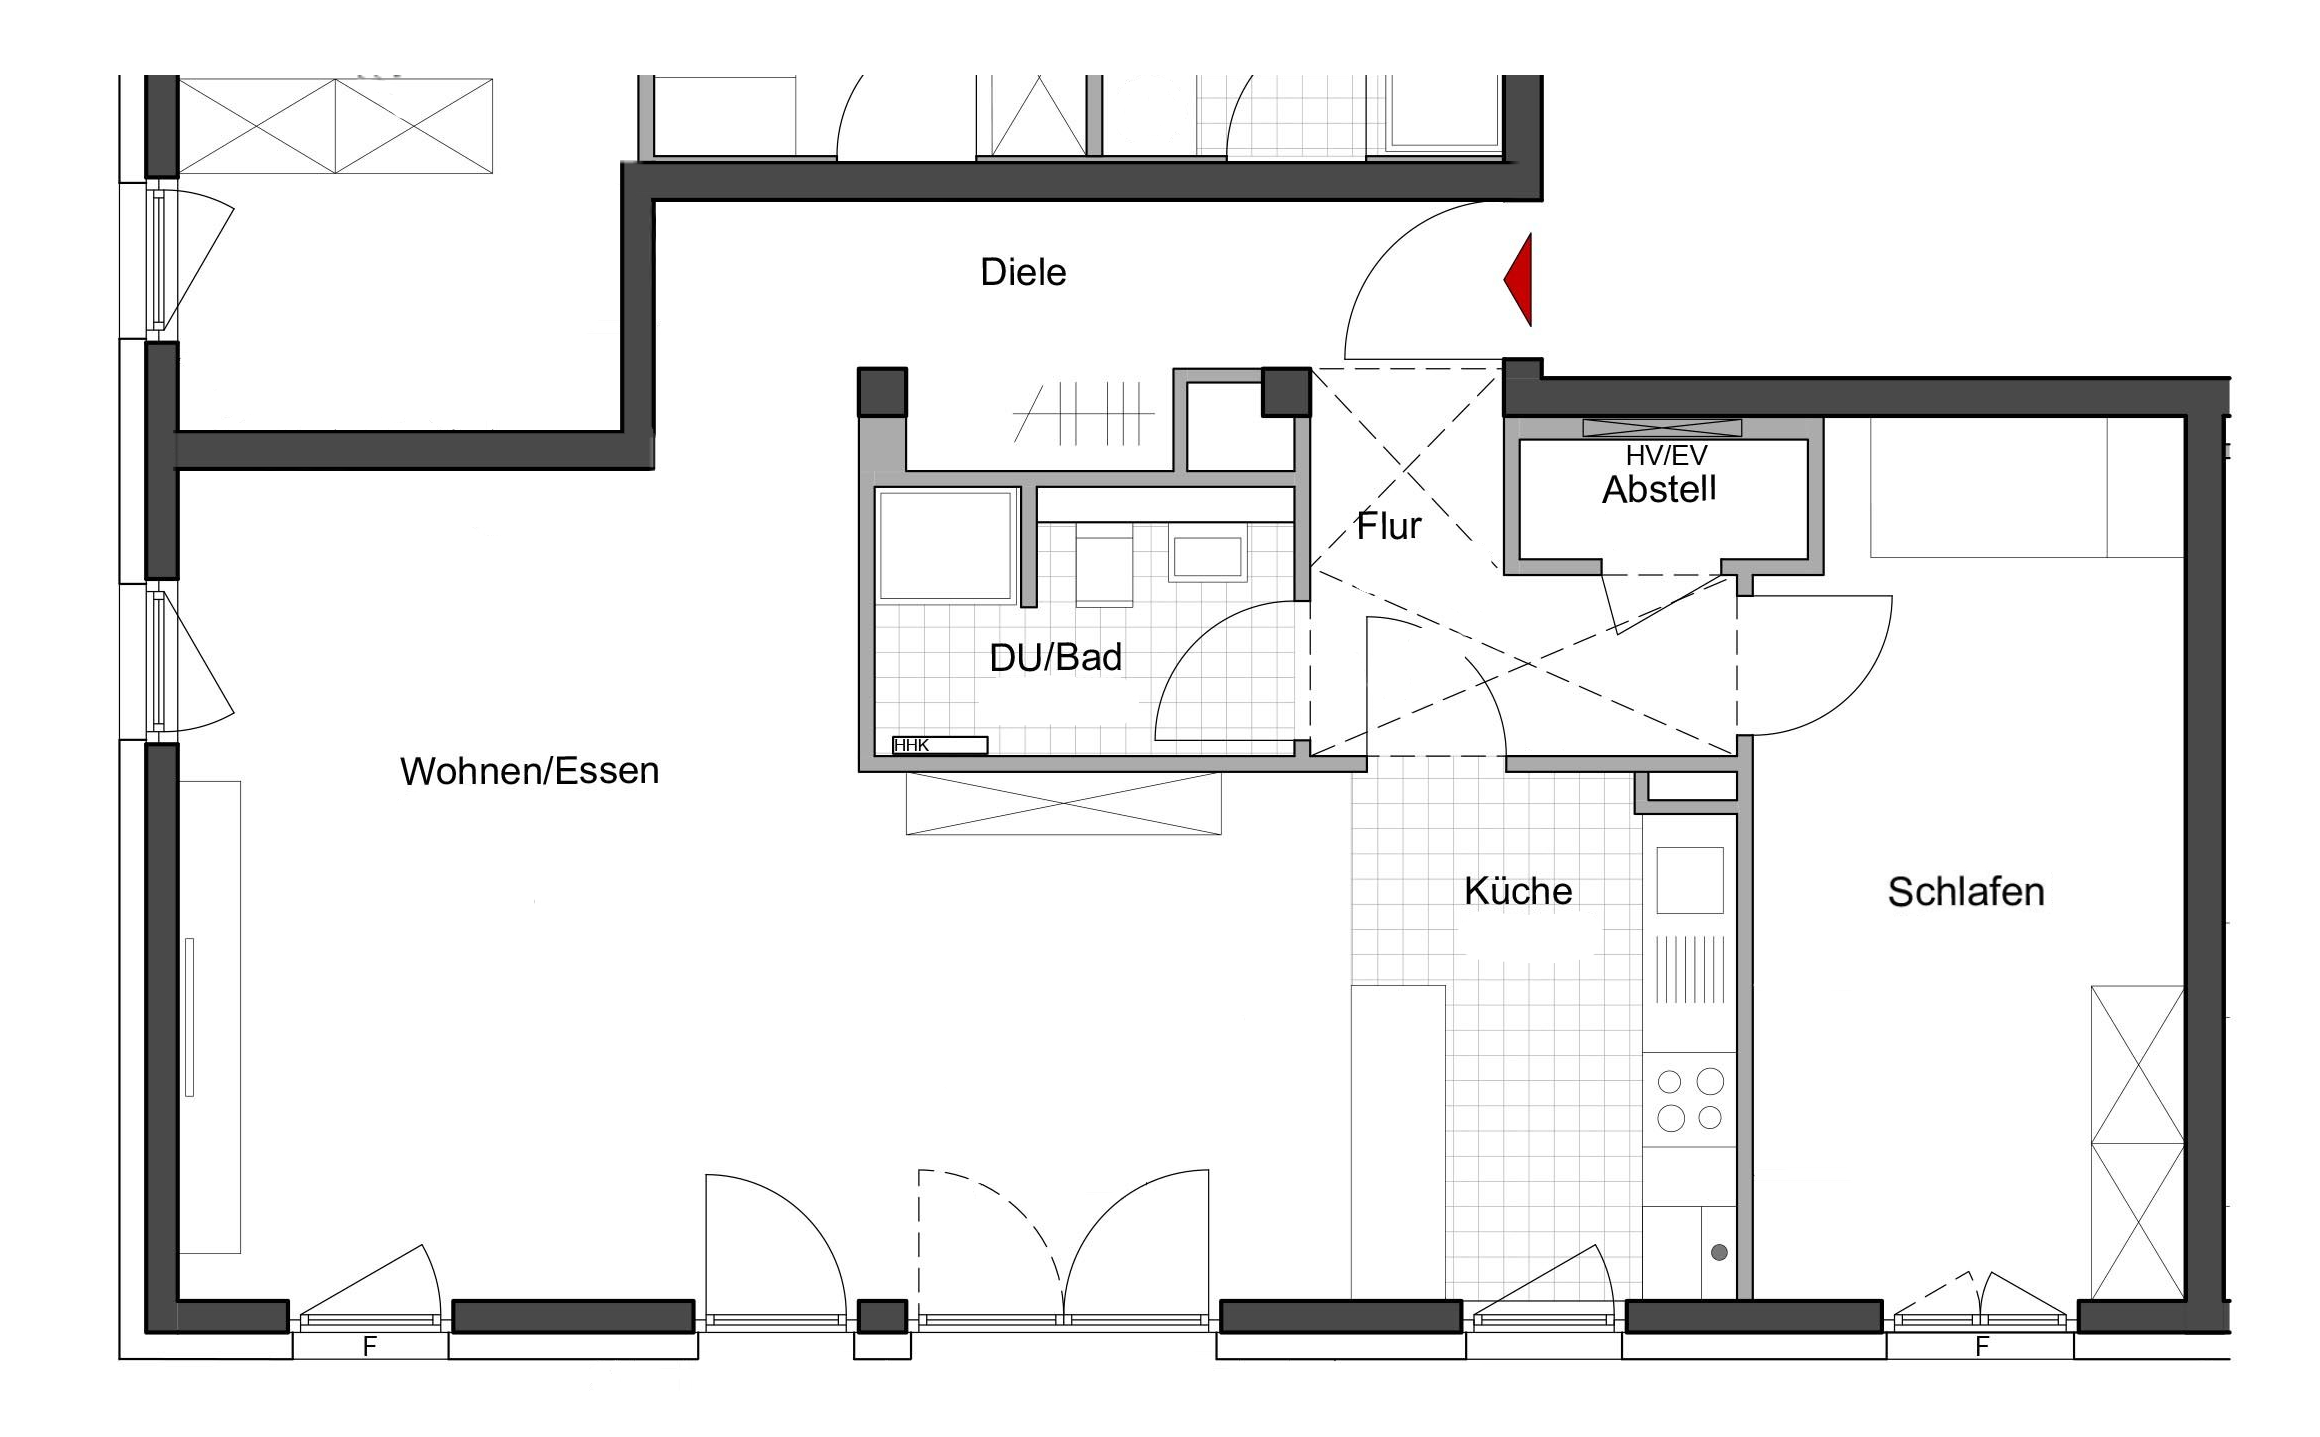 Grundriss einer 2-Zimmer-Wohnung, in der Rauchmelder installiert werden sollen